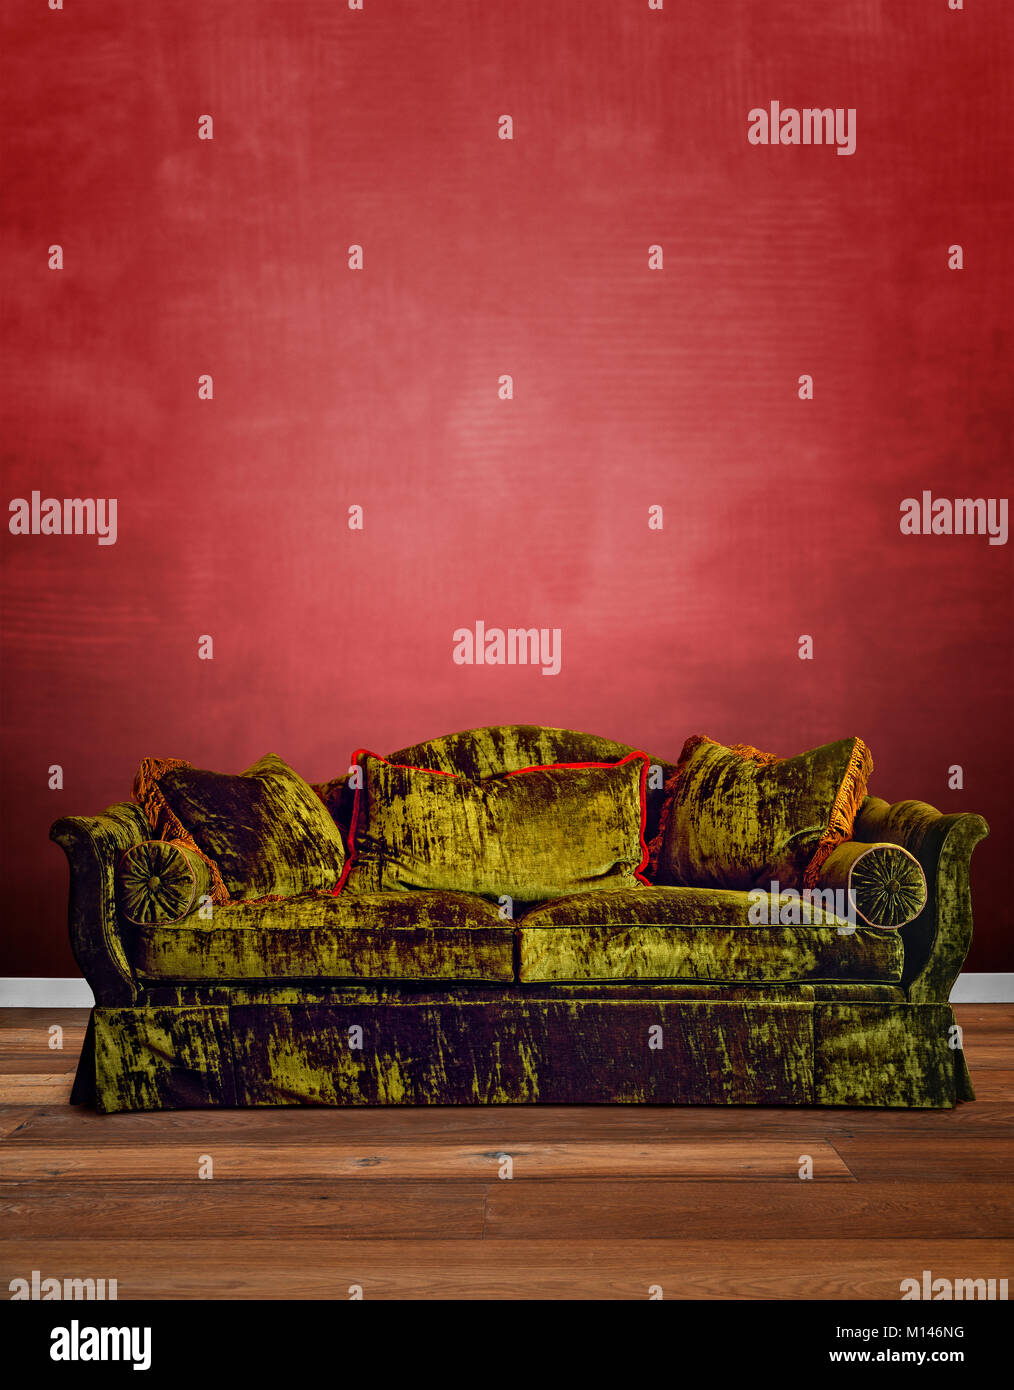 Sofá rojo en el suelo sofá vintage hecho por aiinteligencia